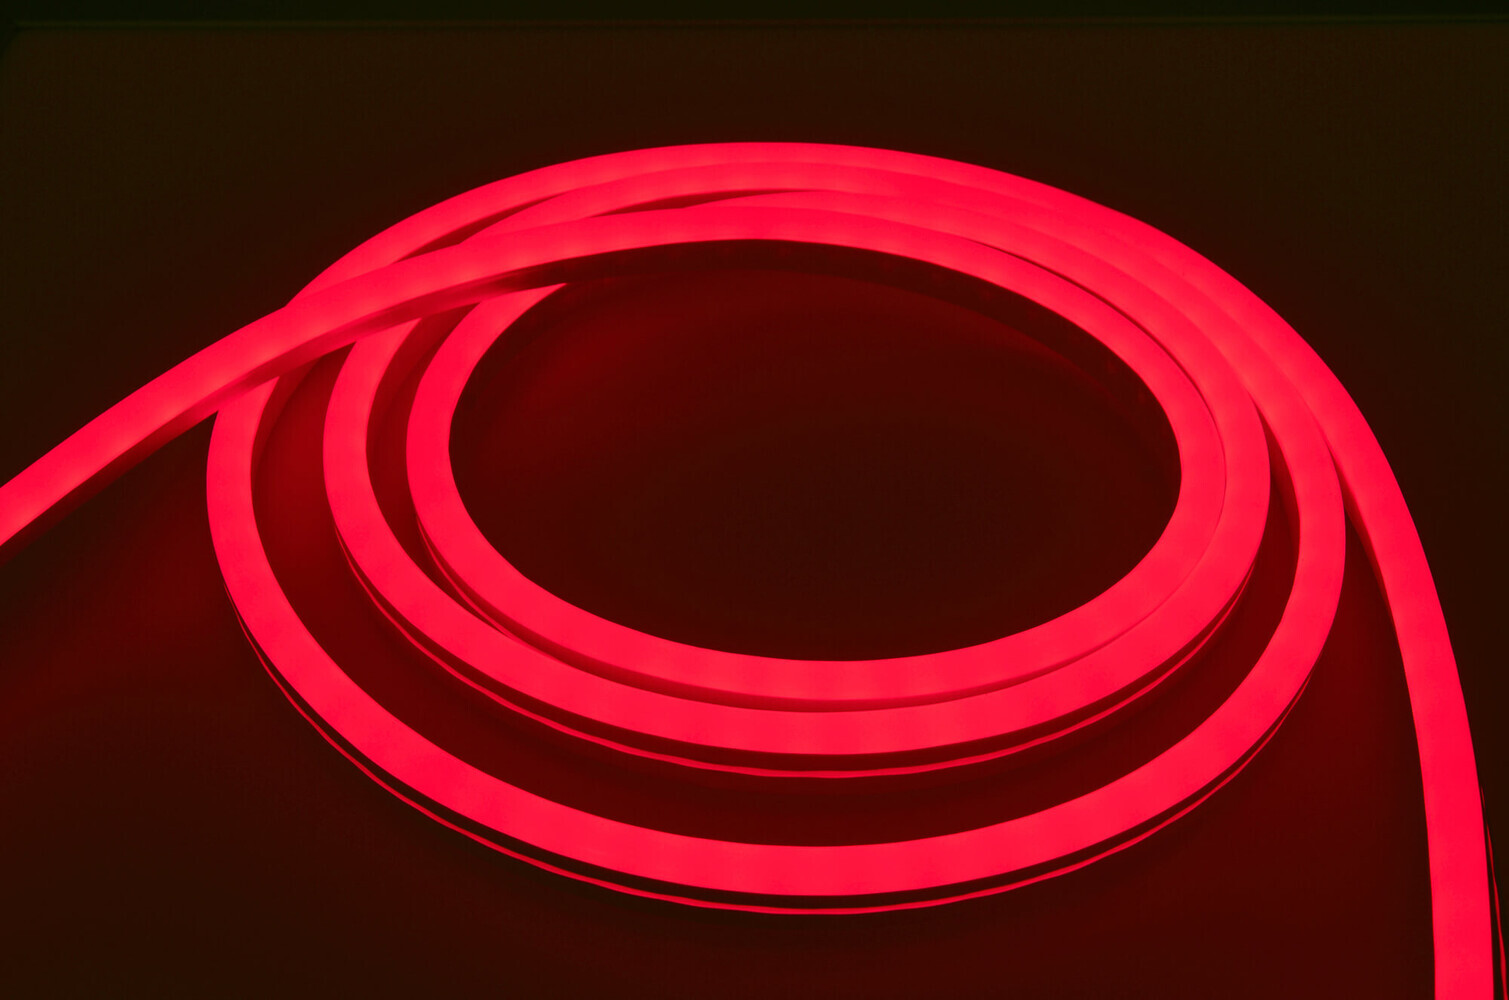 Helle Professional 230V LED Streifen im lebendigen RGB-Farbspektrum von LED Universum